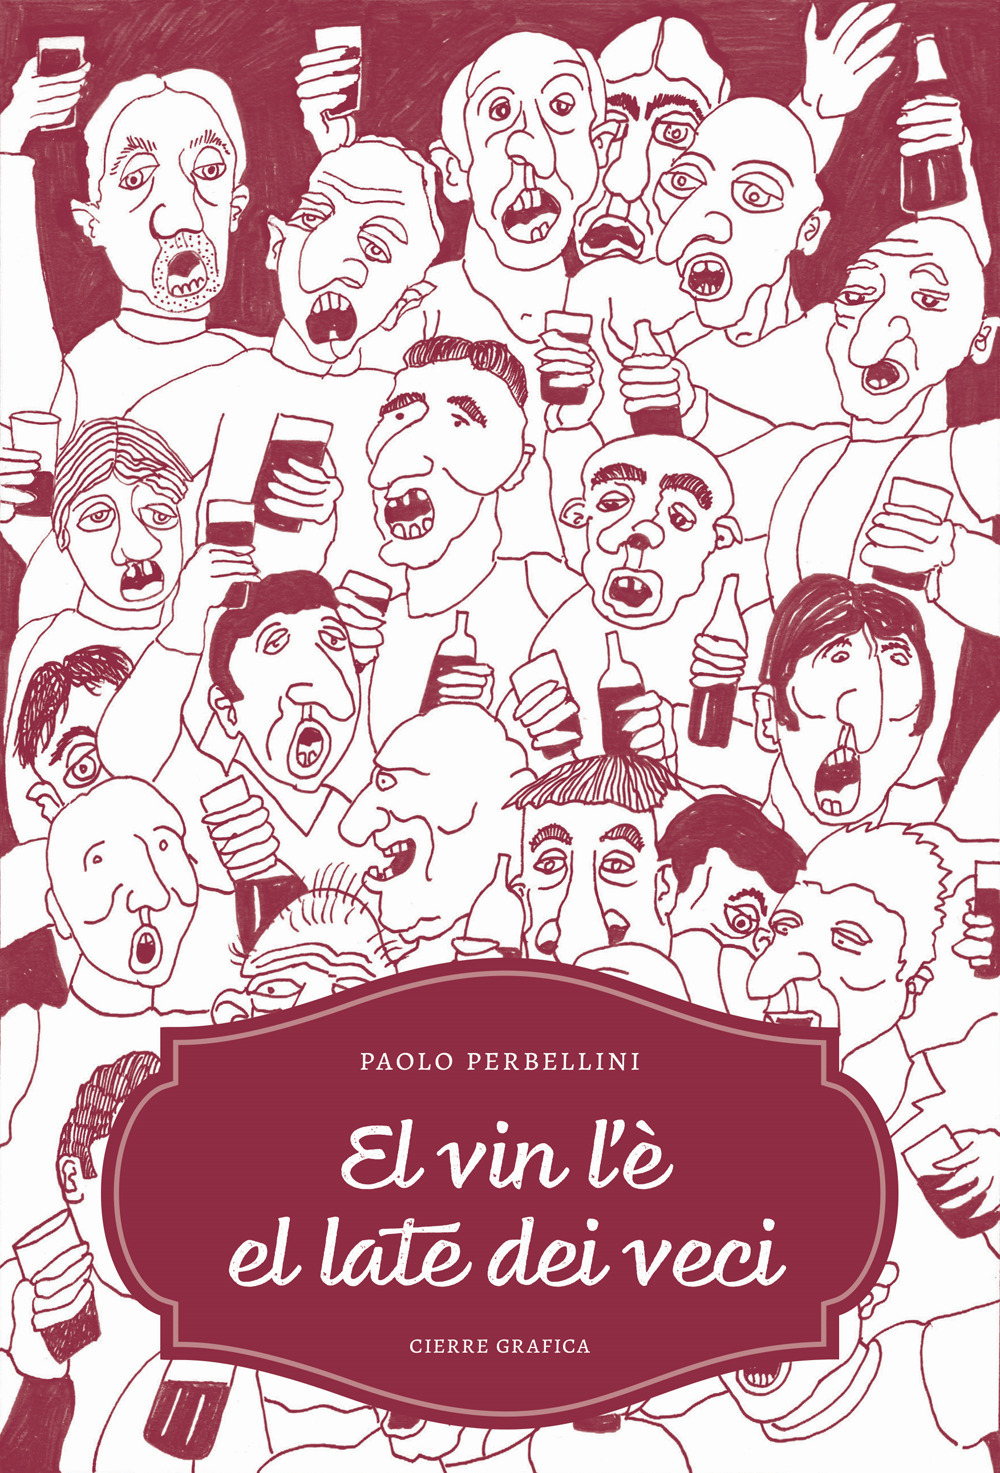 El vin l'è el late dei veci. 436 proverbi sul vino in dialetto veronese, 119 tavole illustrate. Ediz. integrale